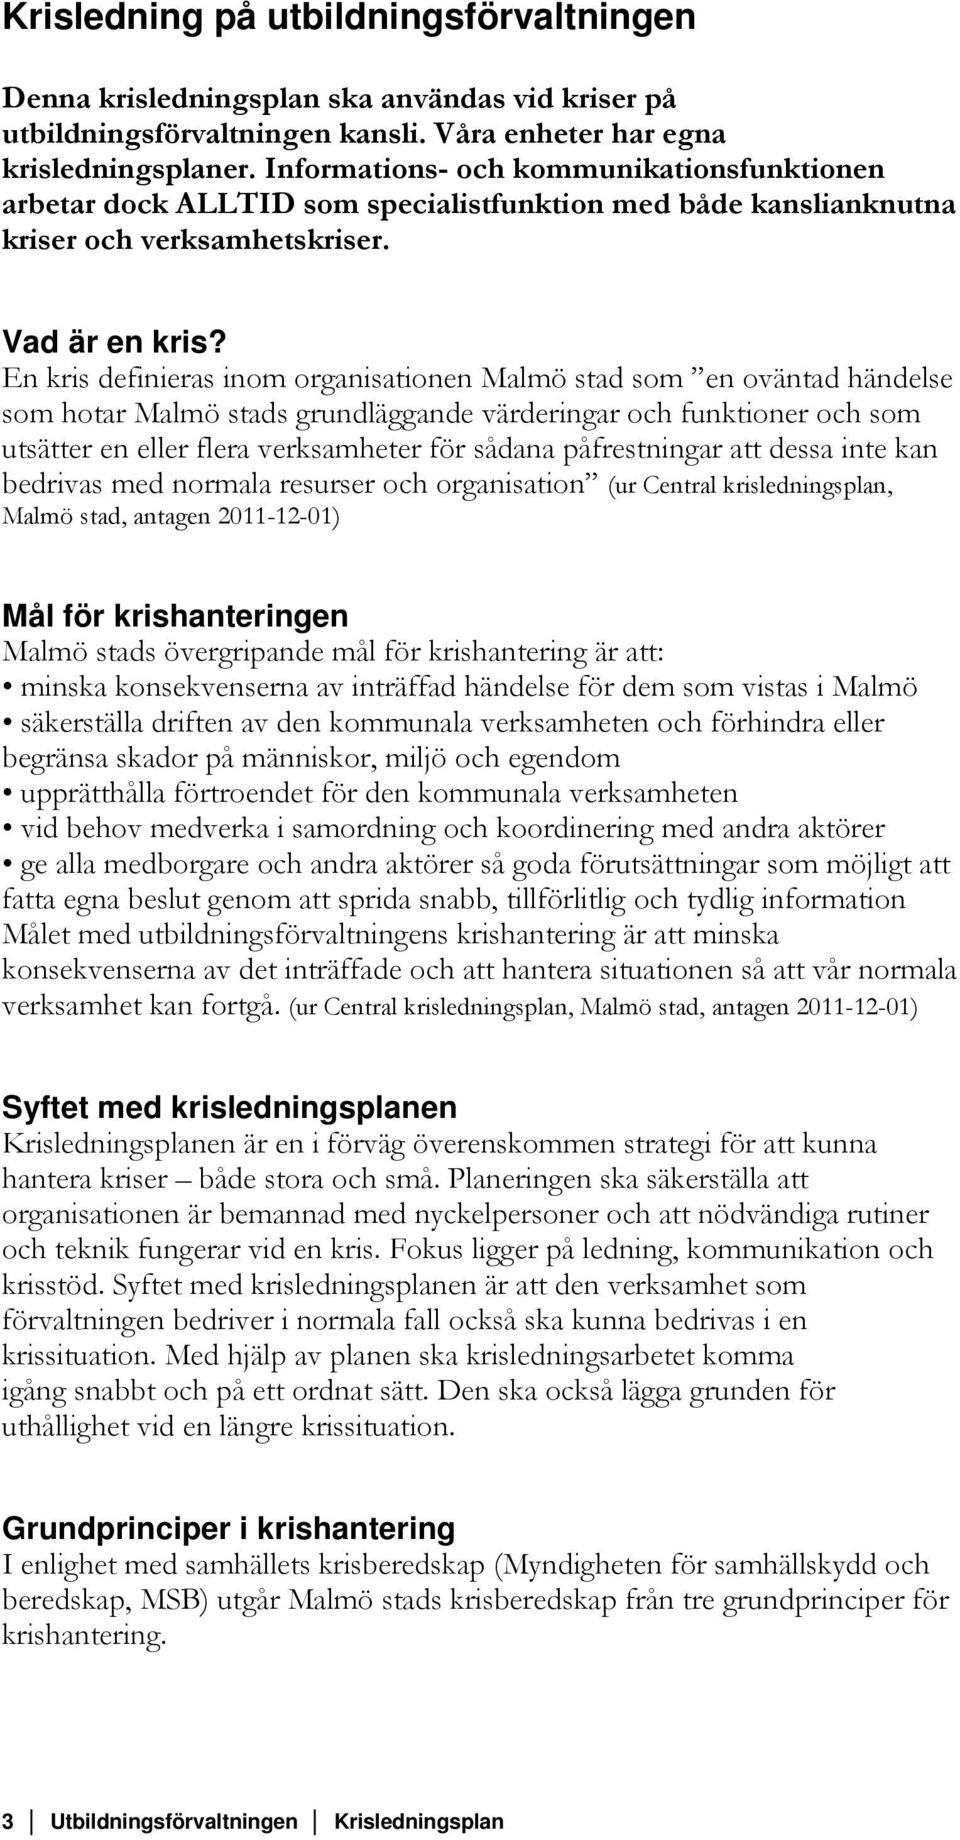 En kris definieras inom organisationen Malmö stad som en oväntad händelse som hotar Malmö stads grundläggande värderingar och funktioner och som utsätter en eller flera verksamheter för sådana